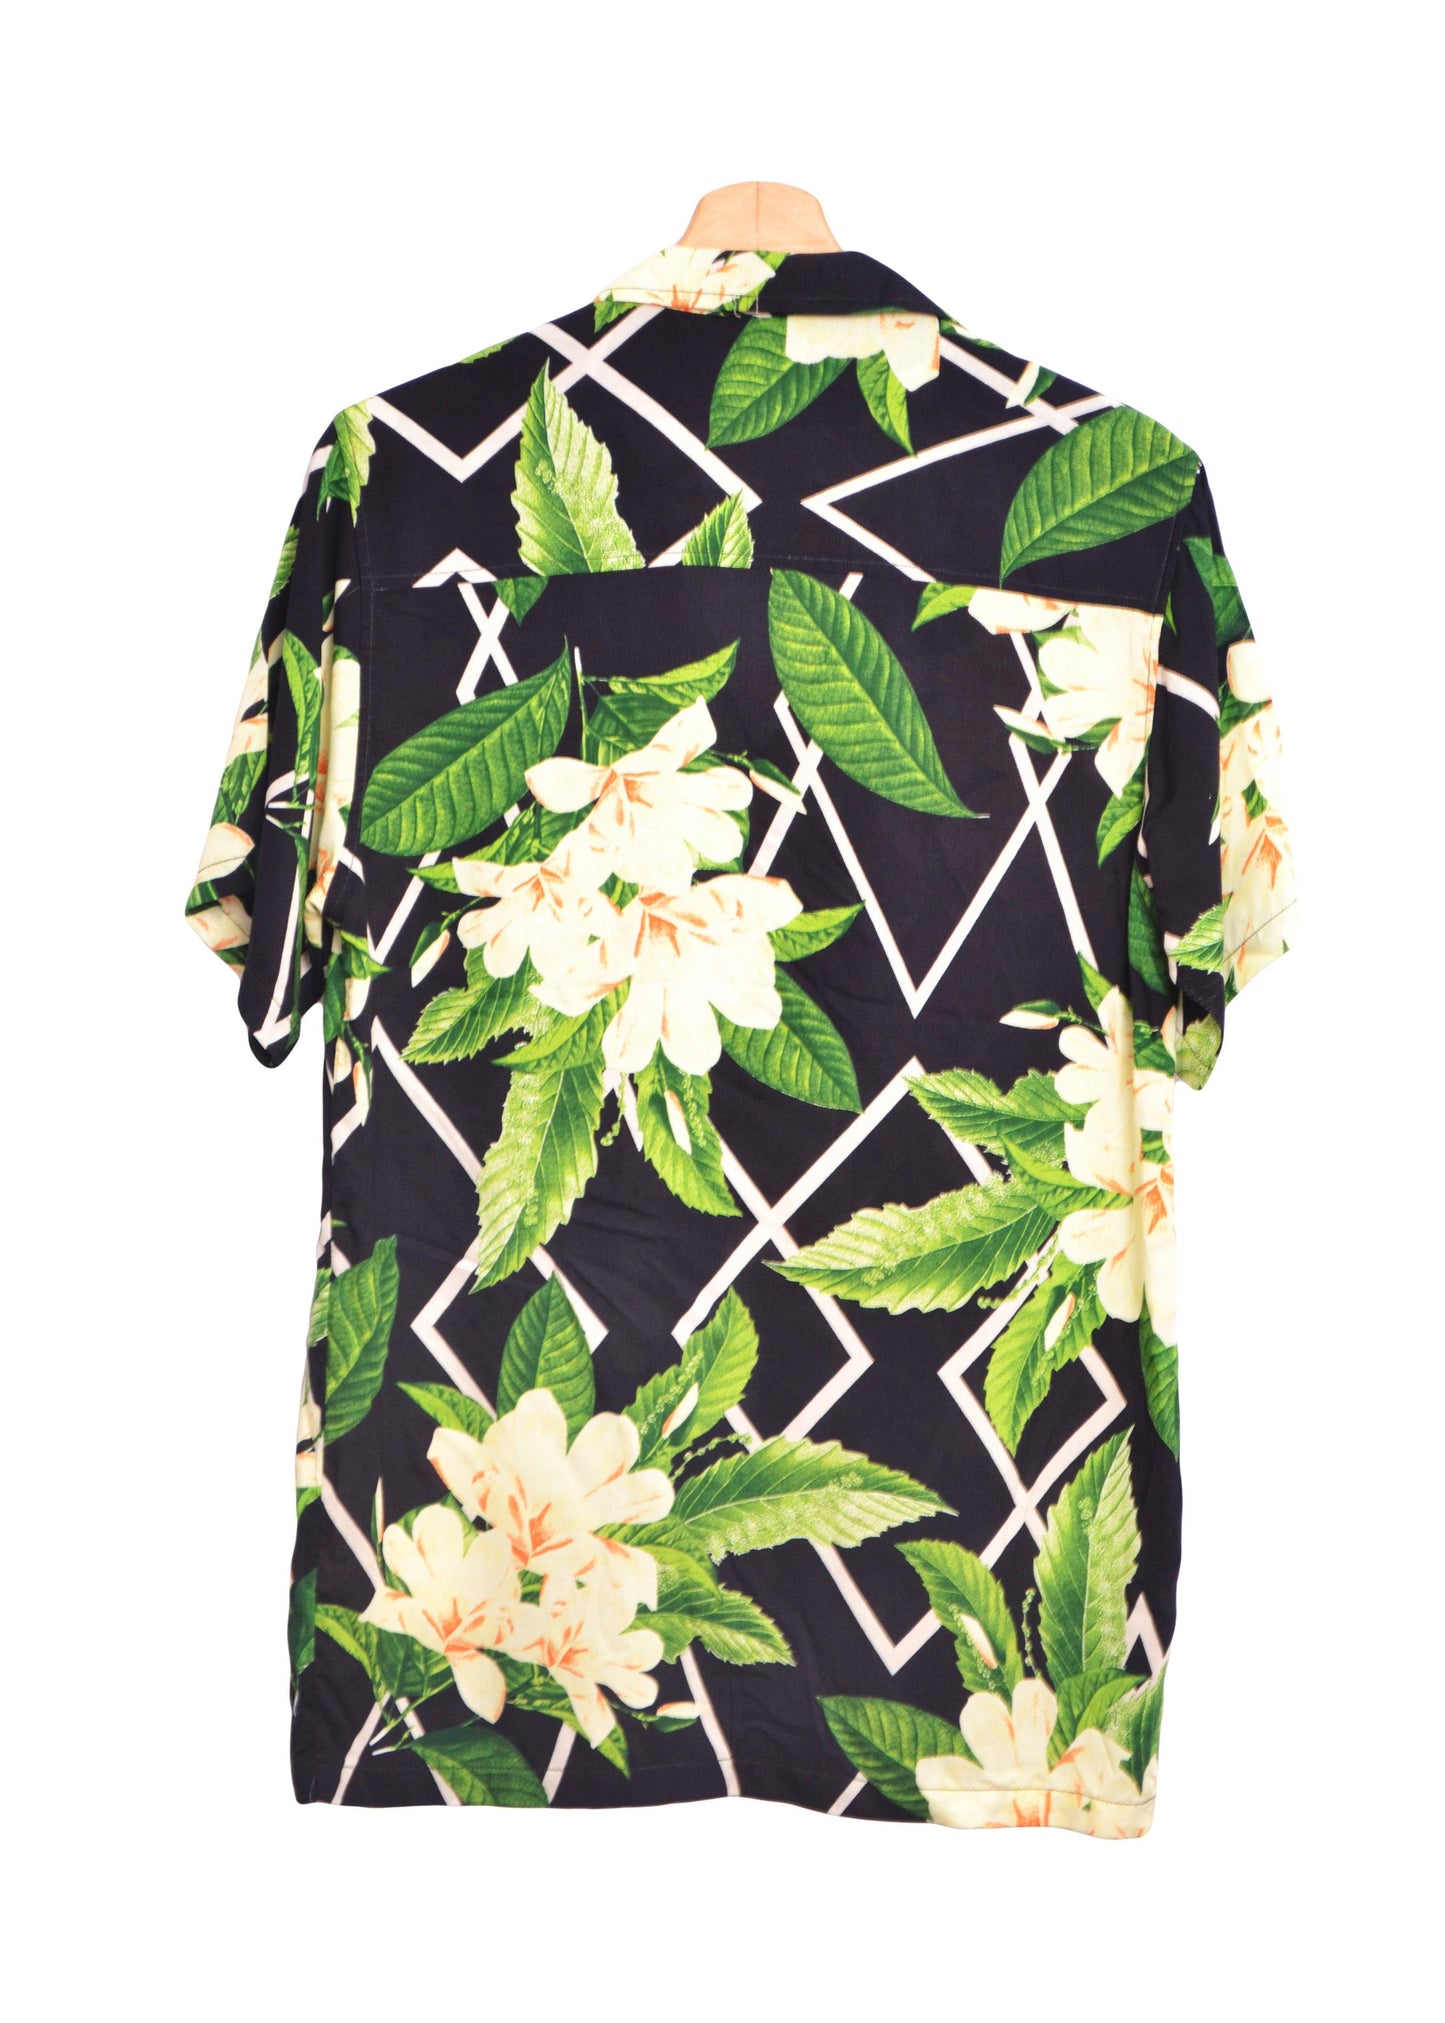 Vue dos chemise hawaienne noire avec imprimé floral blanc et vert - GL BOUTIK